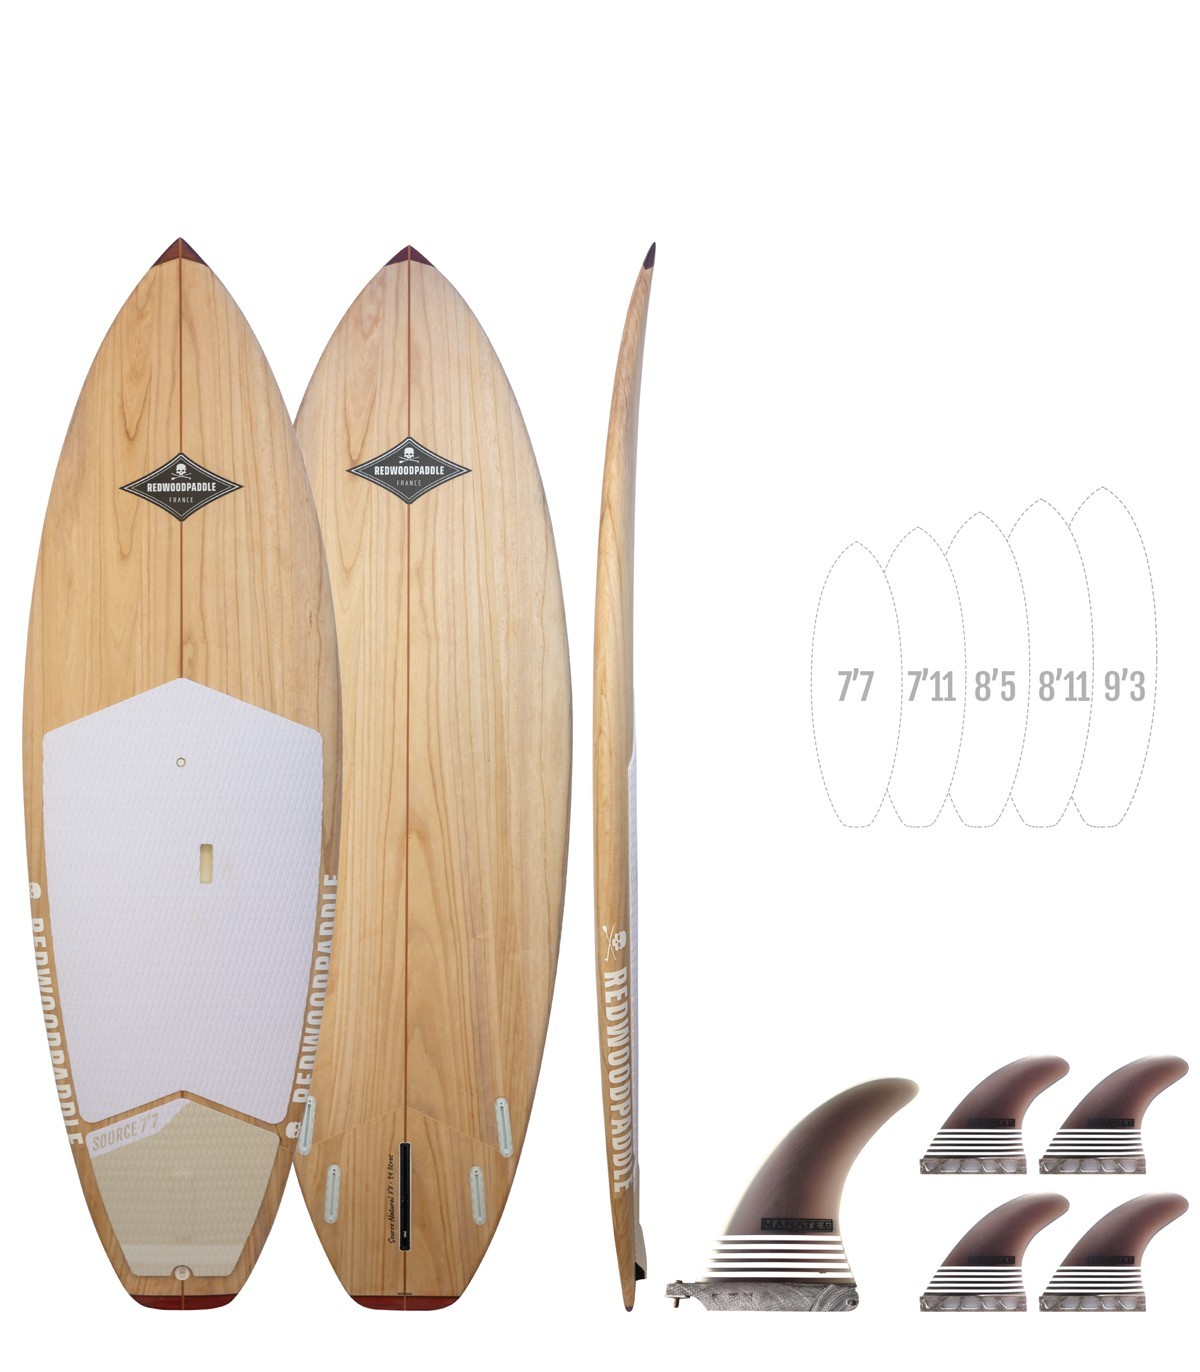 tablas de paddle surf baratas y rigidas, tienda online tablas sup